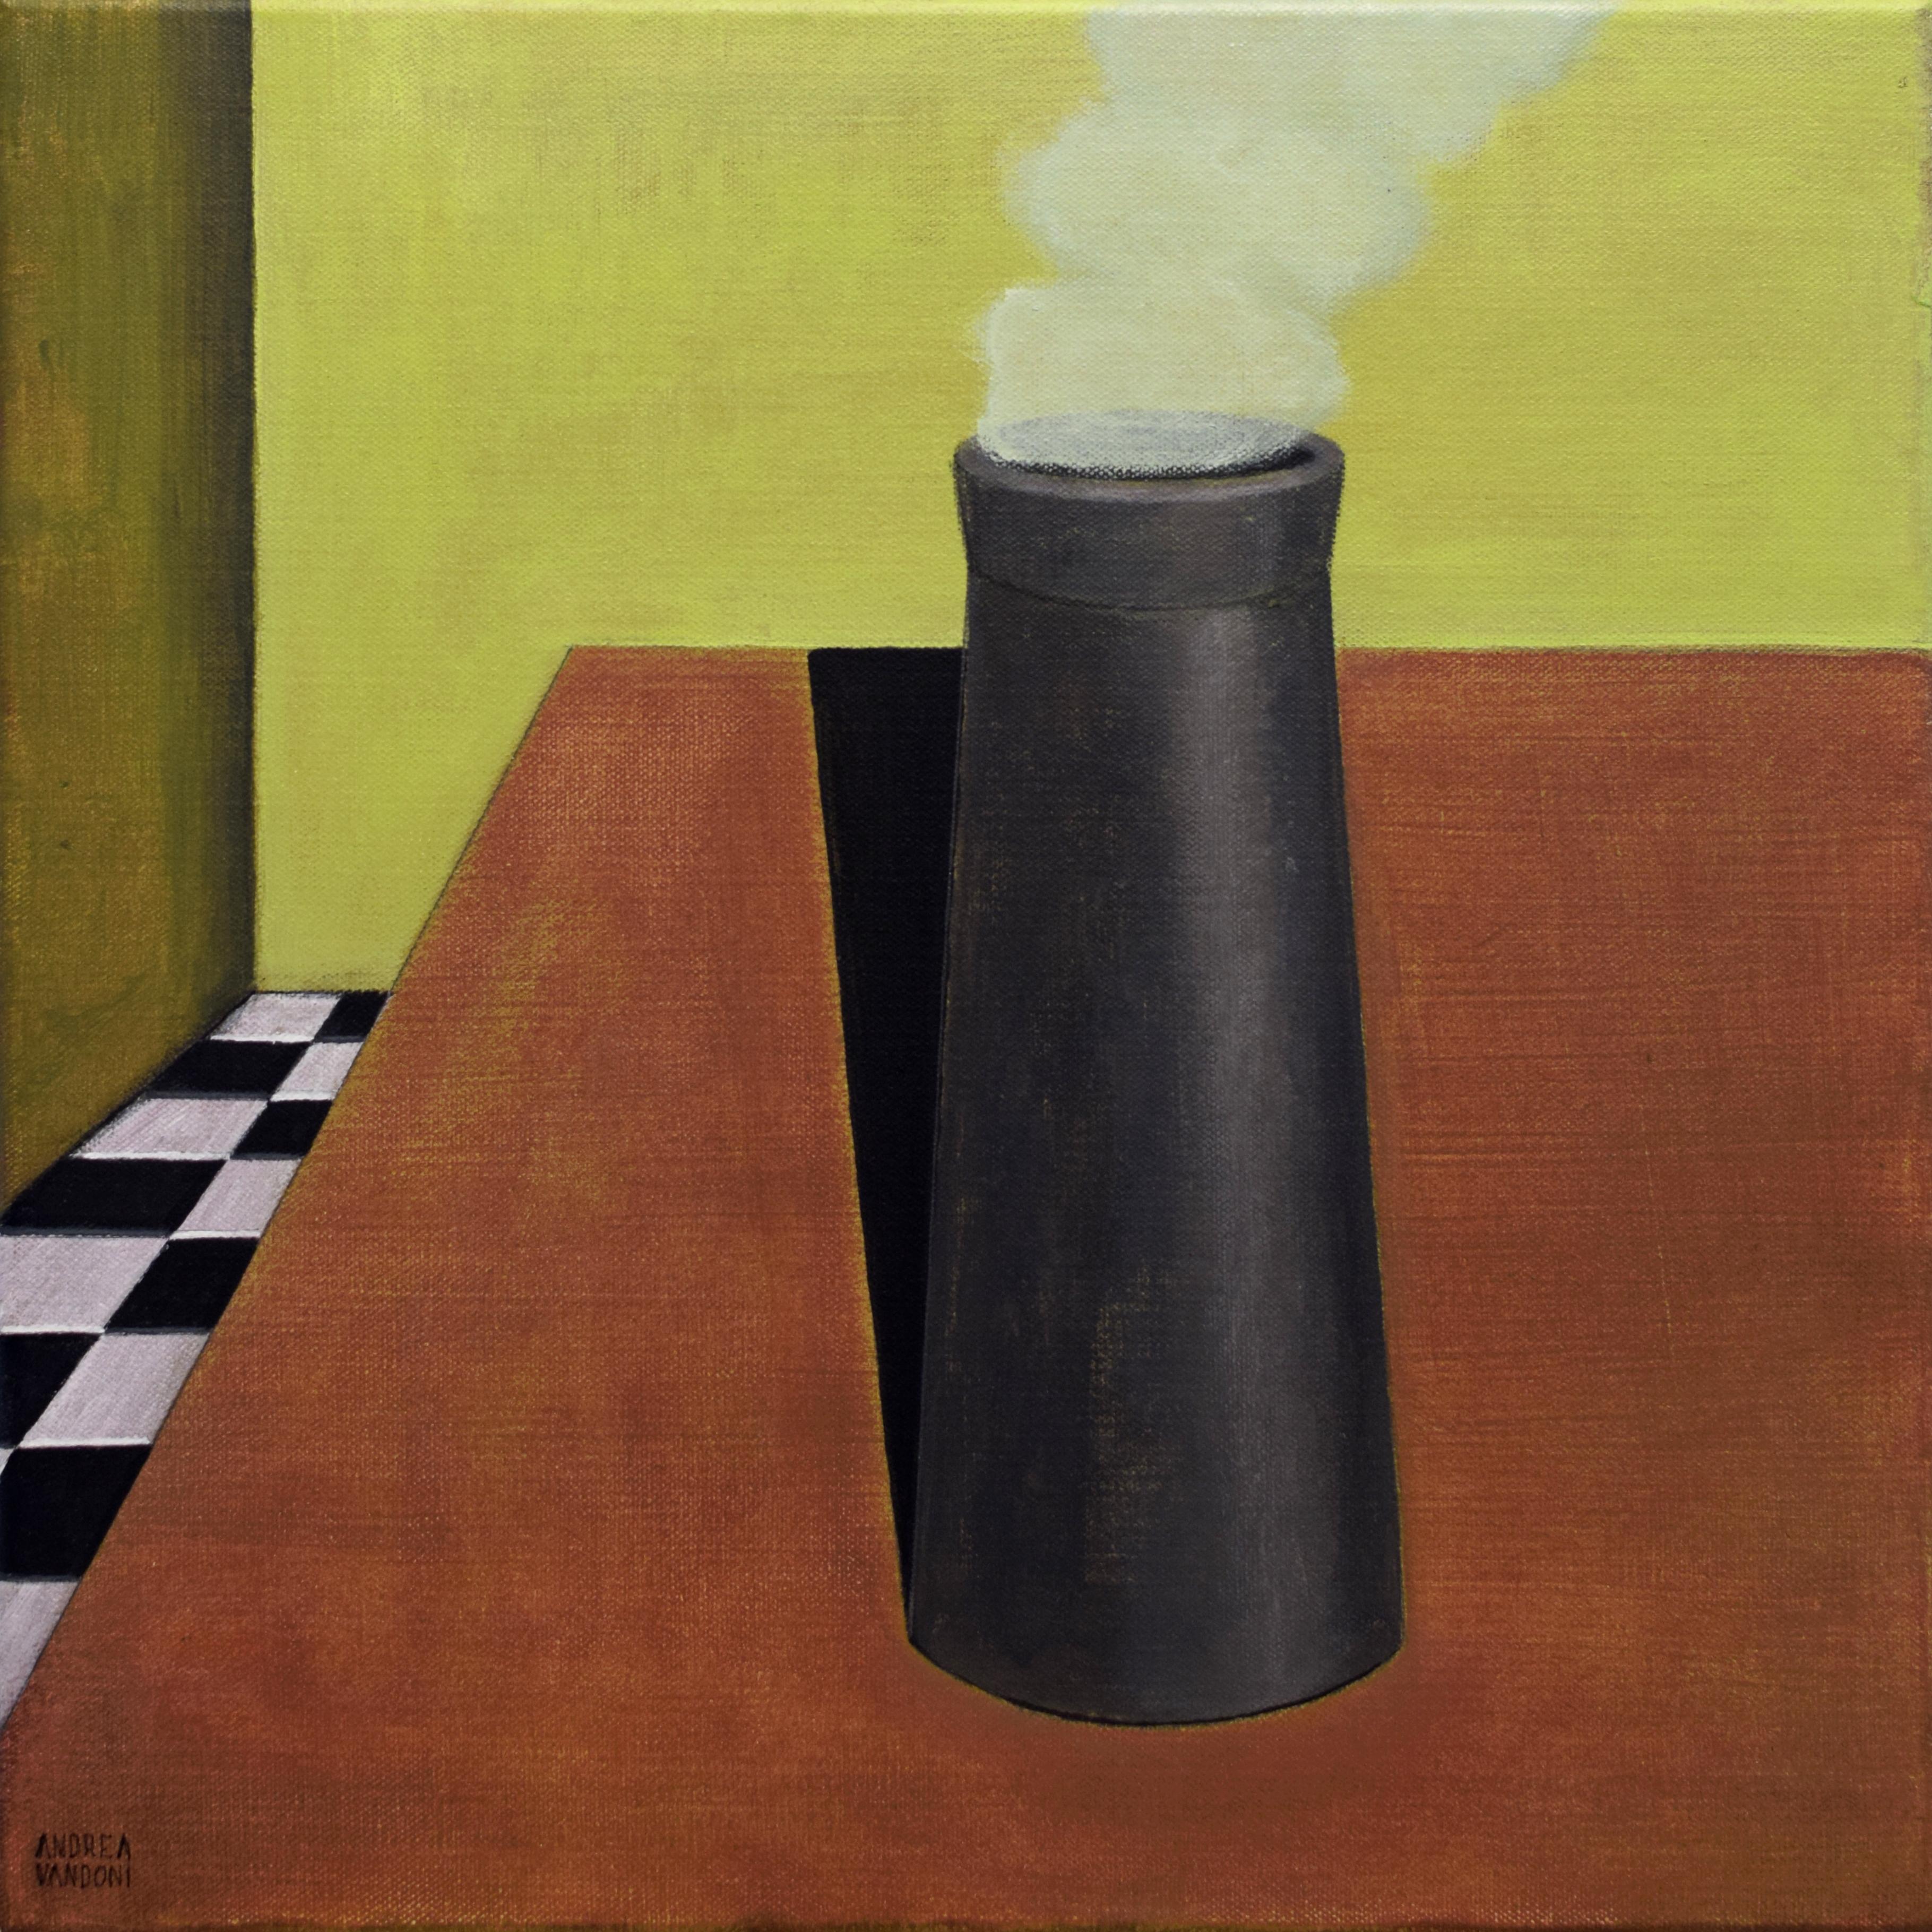 Art contemporain italien d'Andrea Vandoni - La cheminée est sur la table